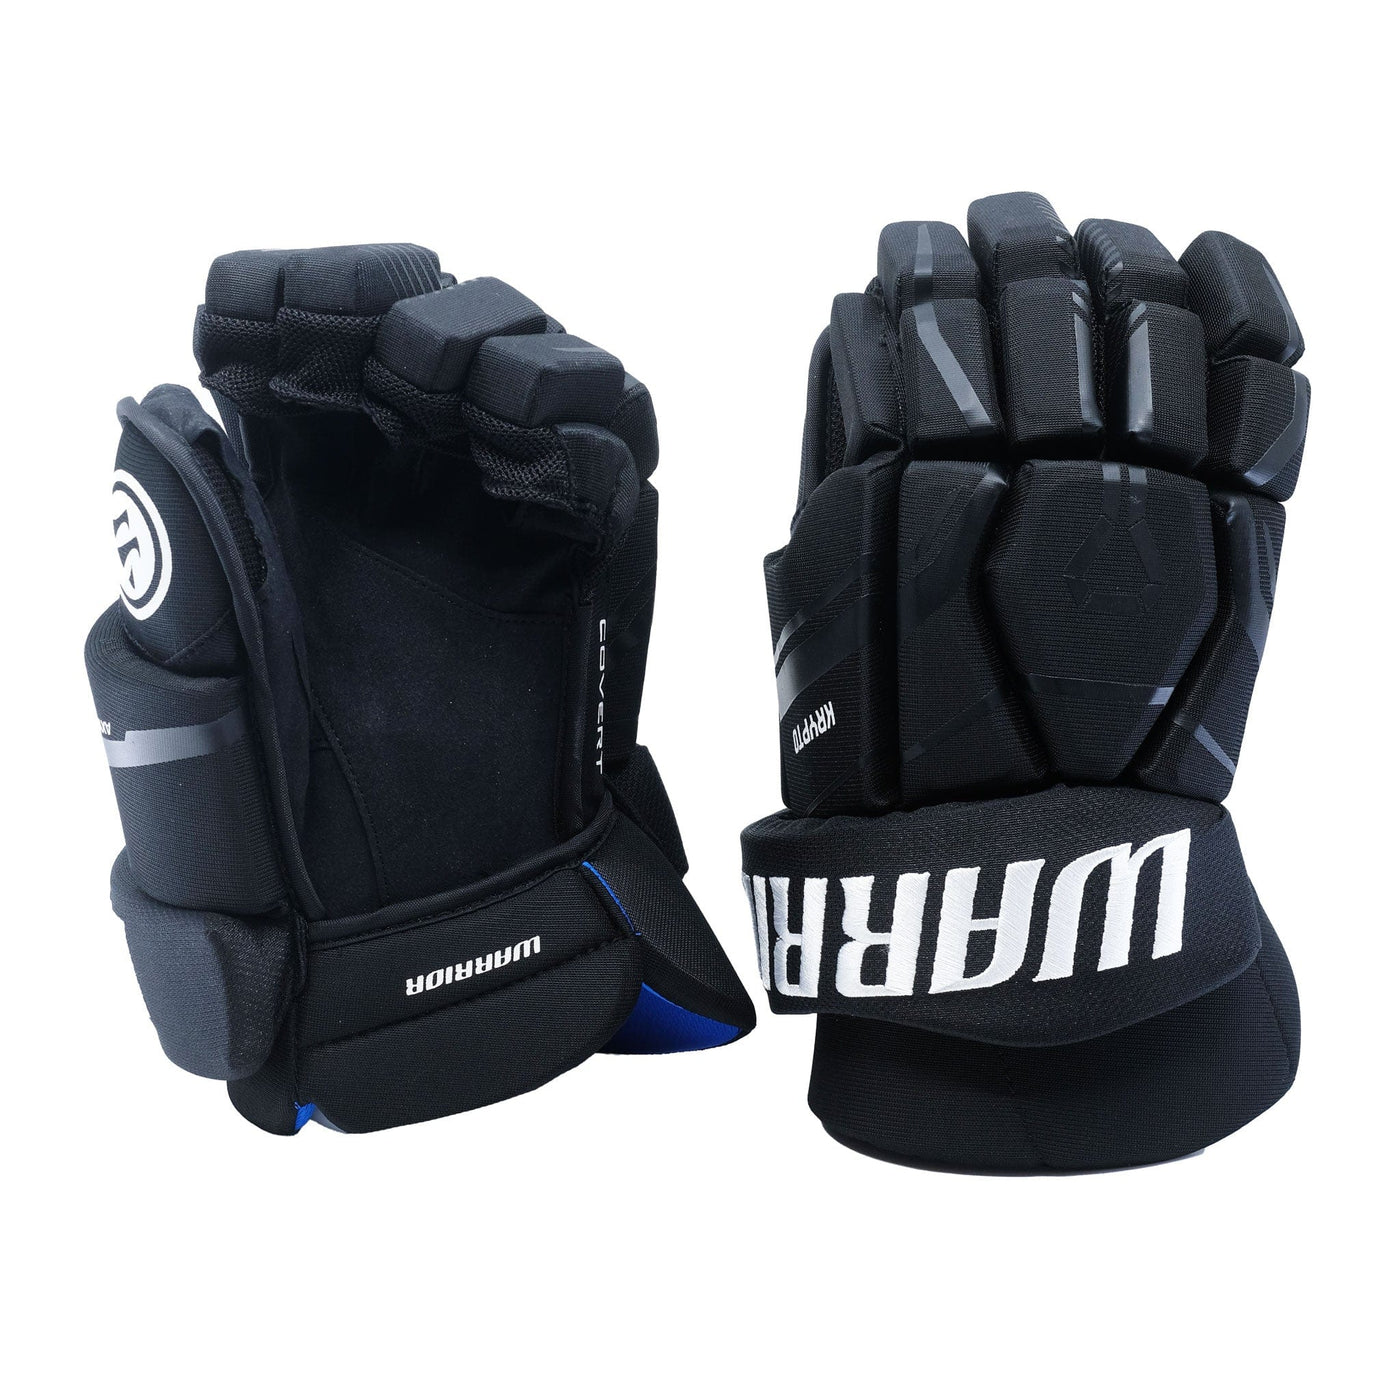 Warrior Krypto Senior Hockey Gloves